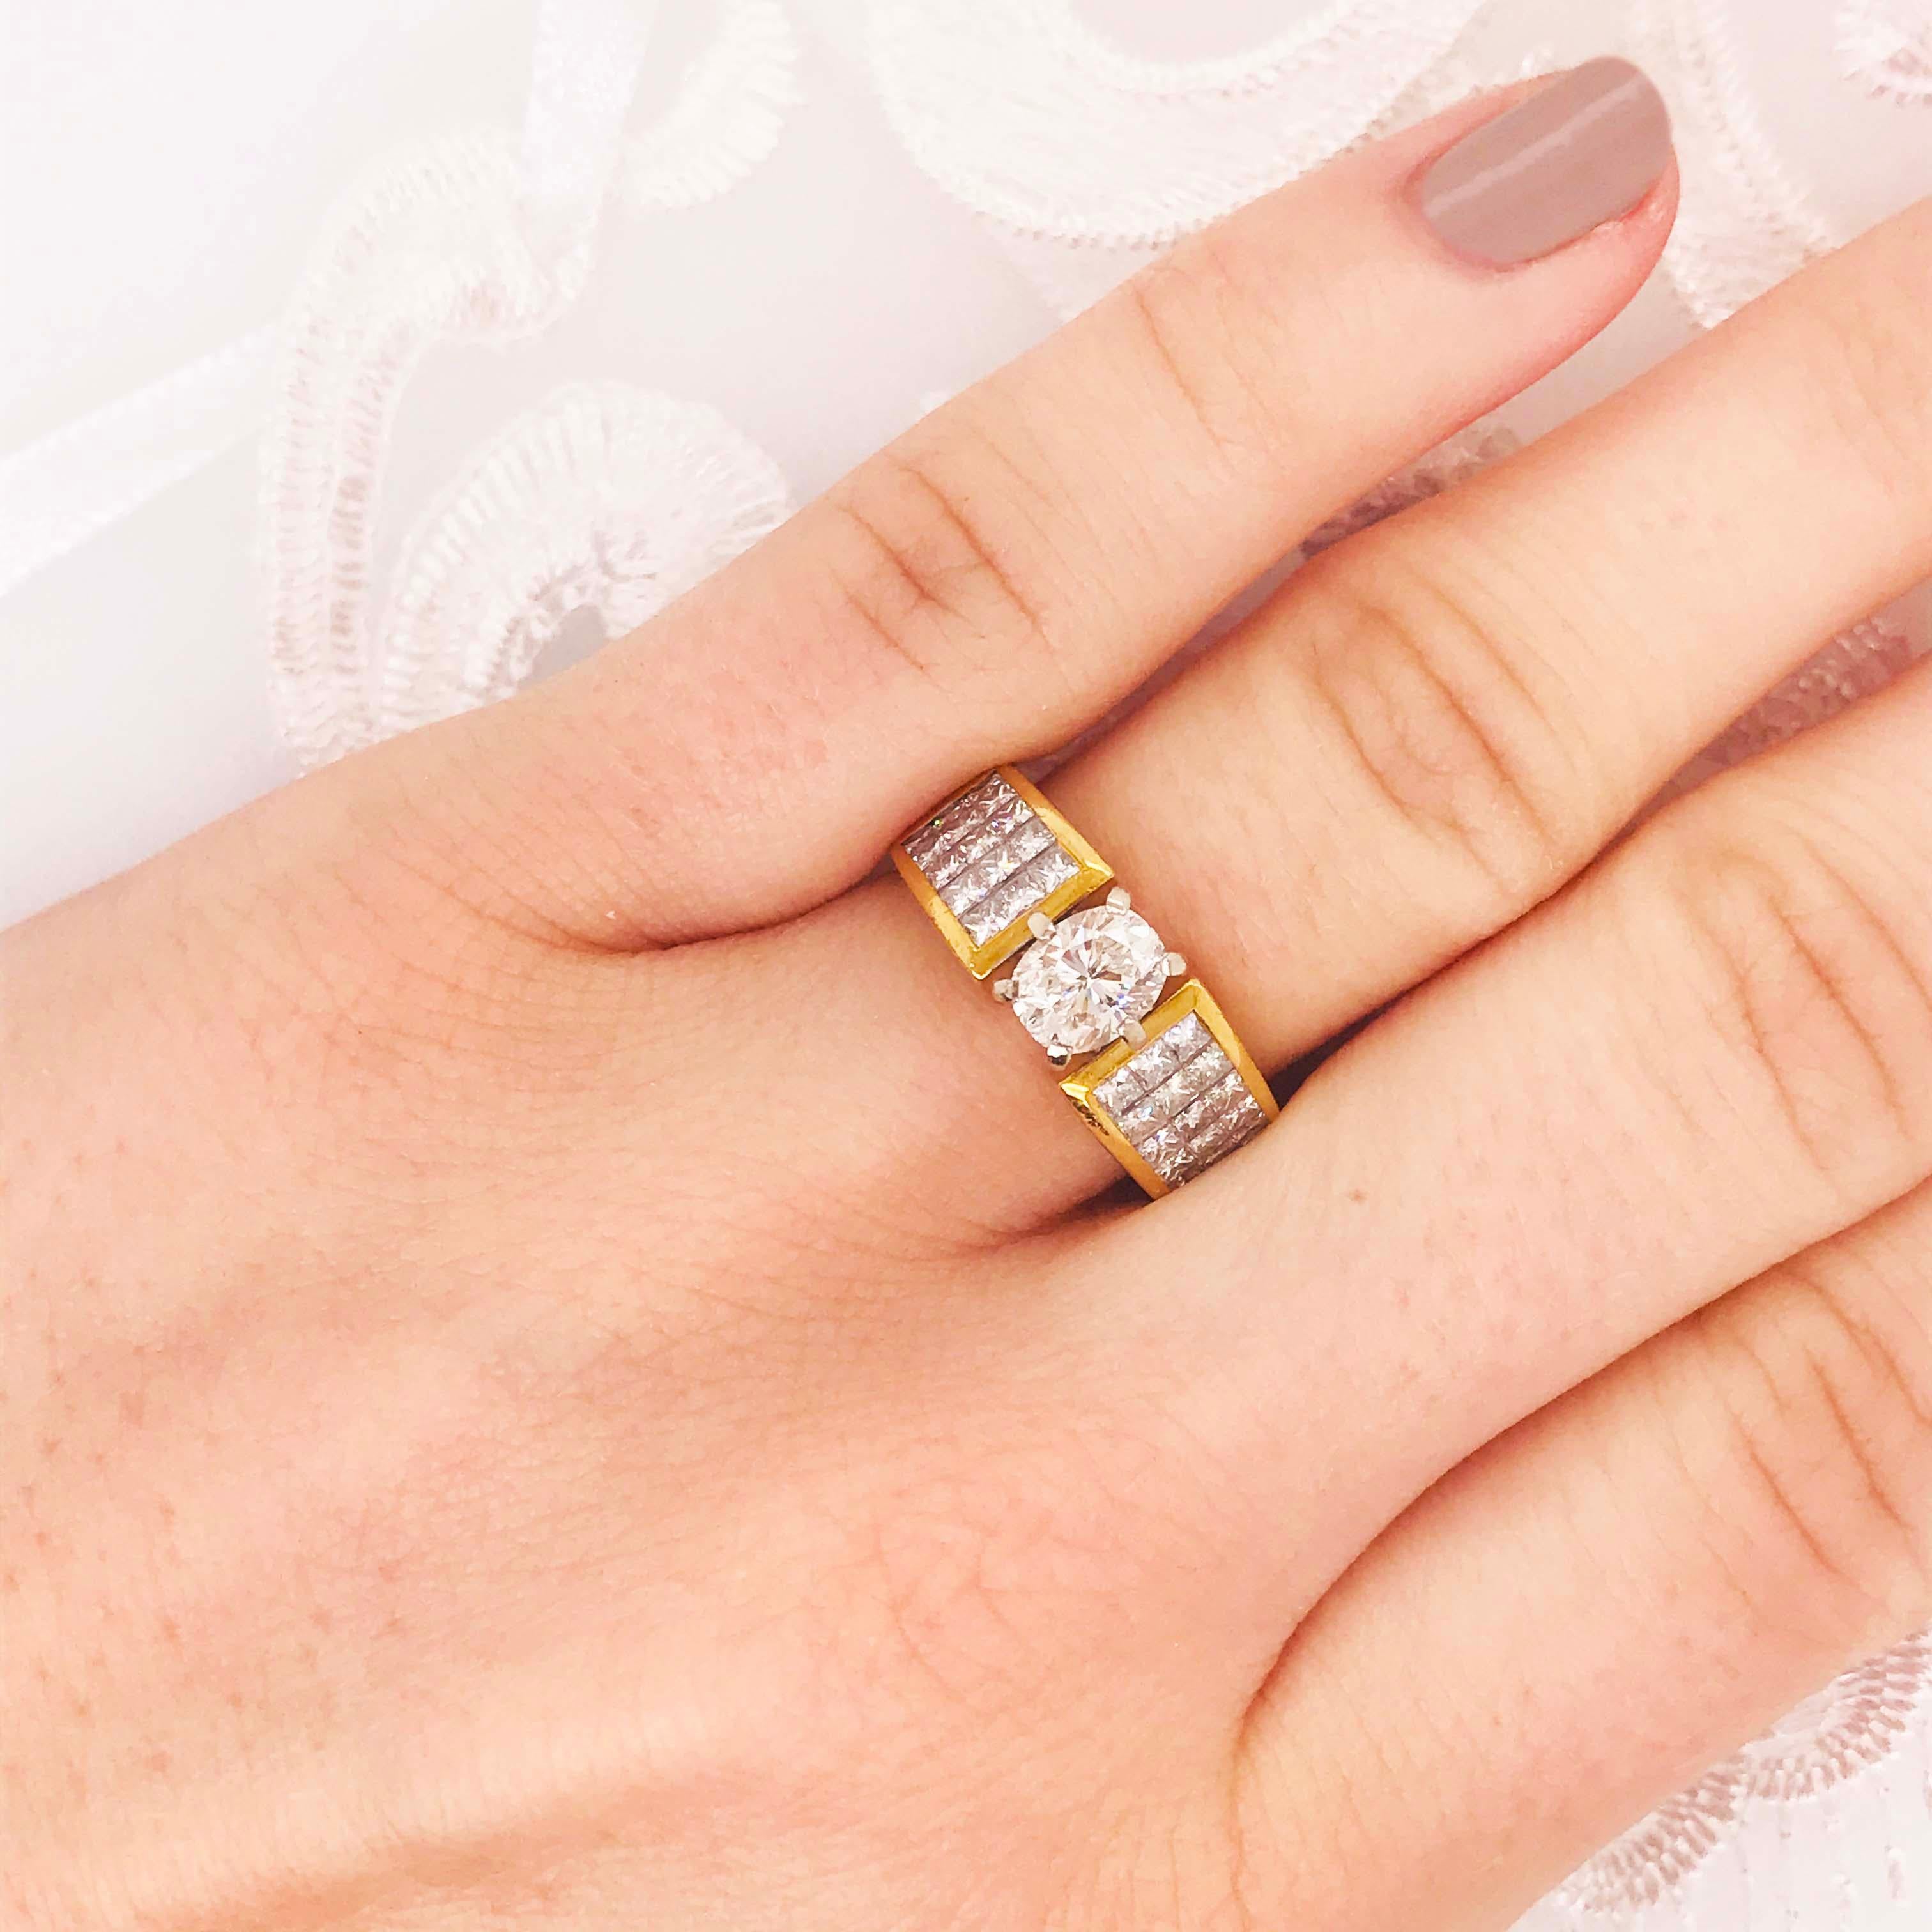 Dieser wunderschöne Ring funkelt gewaltig! Mit einem echten ovalen Diamanten in der Mitte gesetzt ist eine sehr sichere sechs Zacken Fassung. Der ovale weiße Diamant von 0,56 Karat ist in Weißgold gefasst. Die Zacken aus Weißgold, die den Diamanten